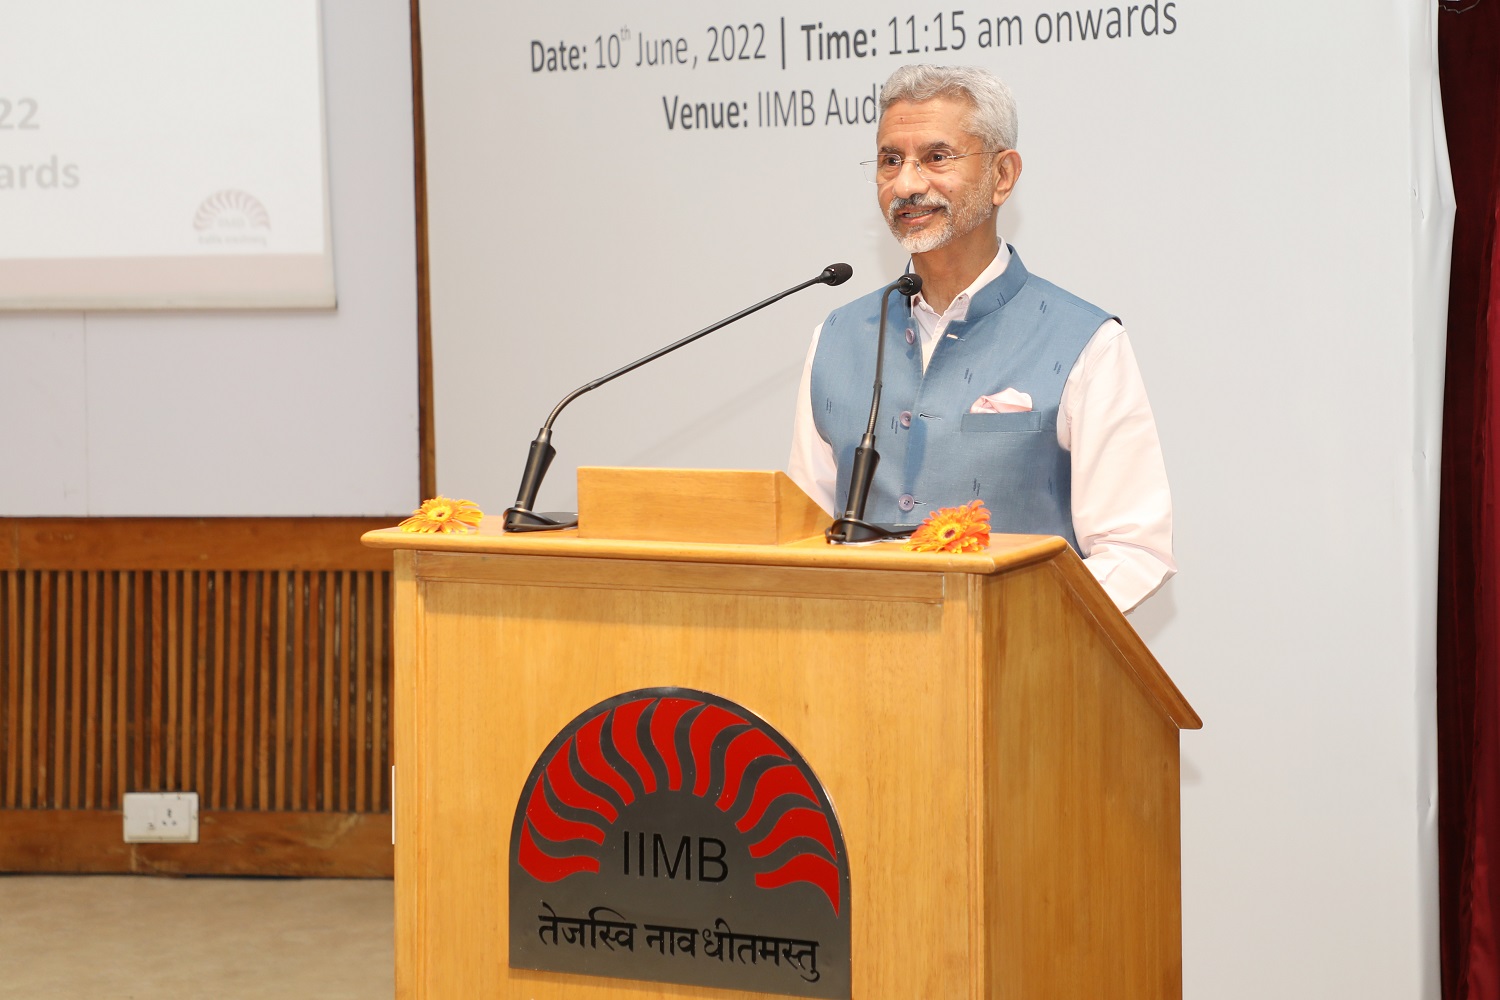 External Affairs Minister Dr. S. Jaishankar speaks to students at IIMB on ‘Atmanirbhar Bharat’.